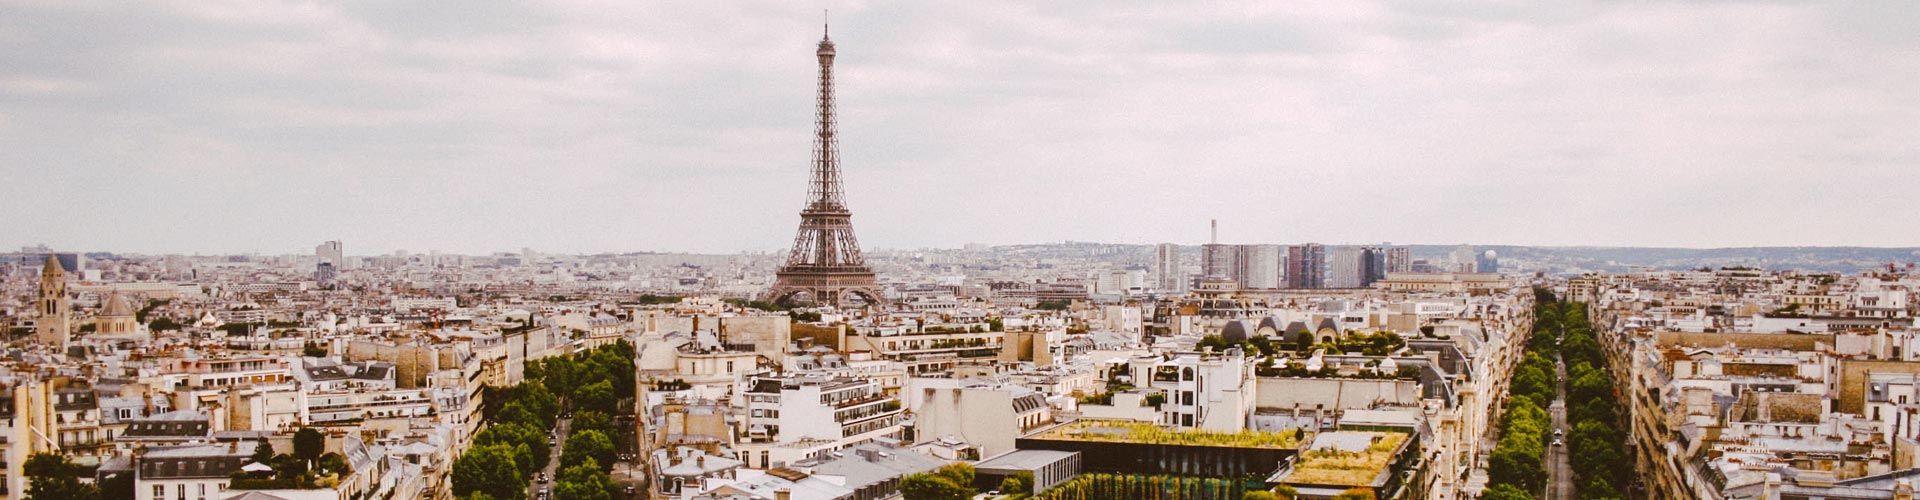 تصویر برج ایفل پاریس